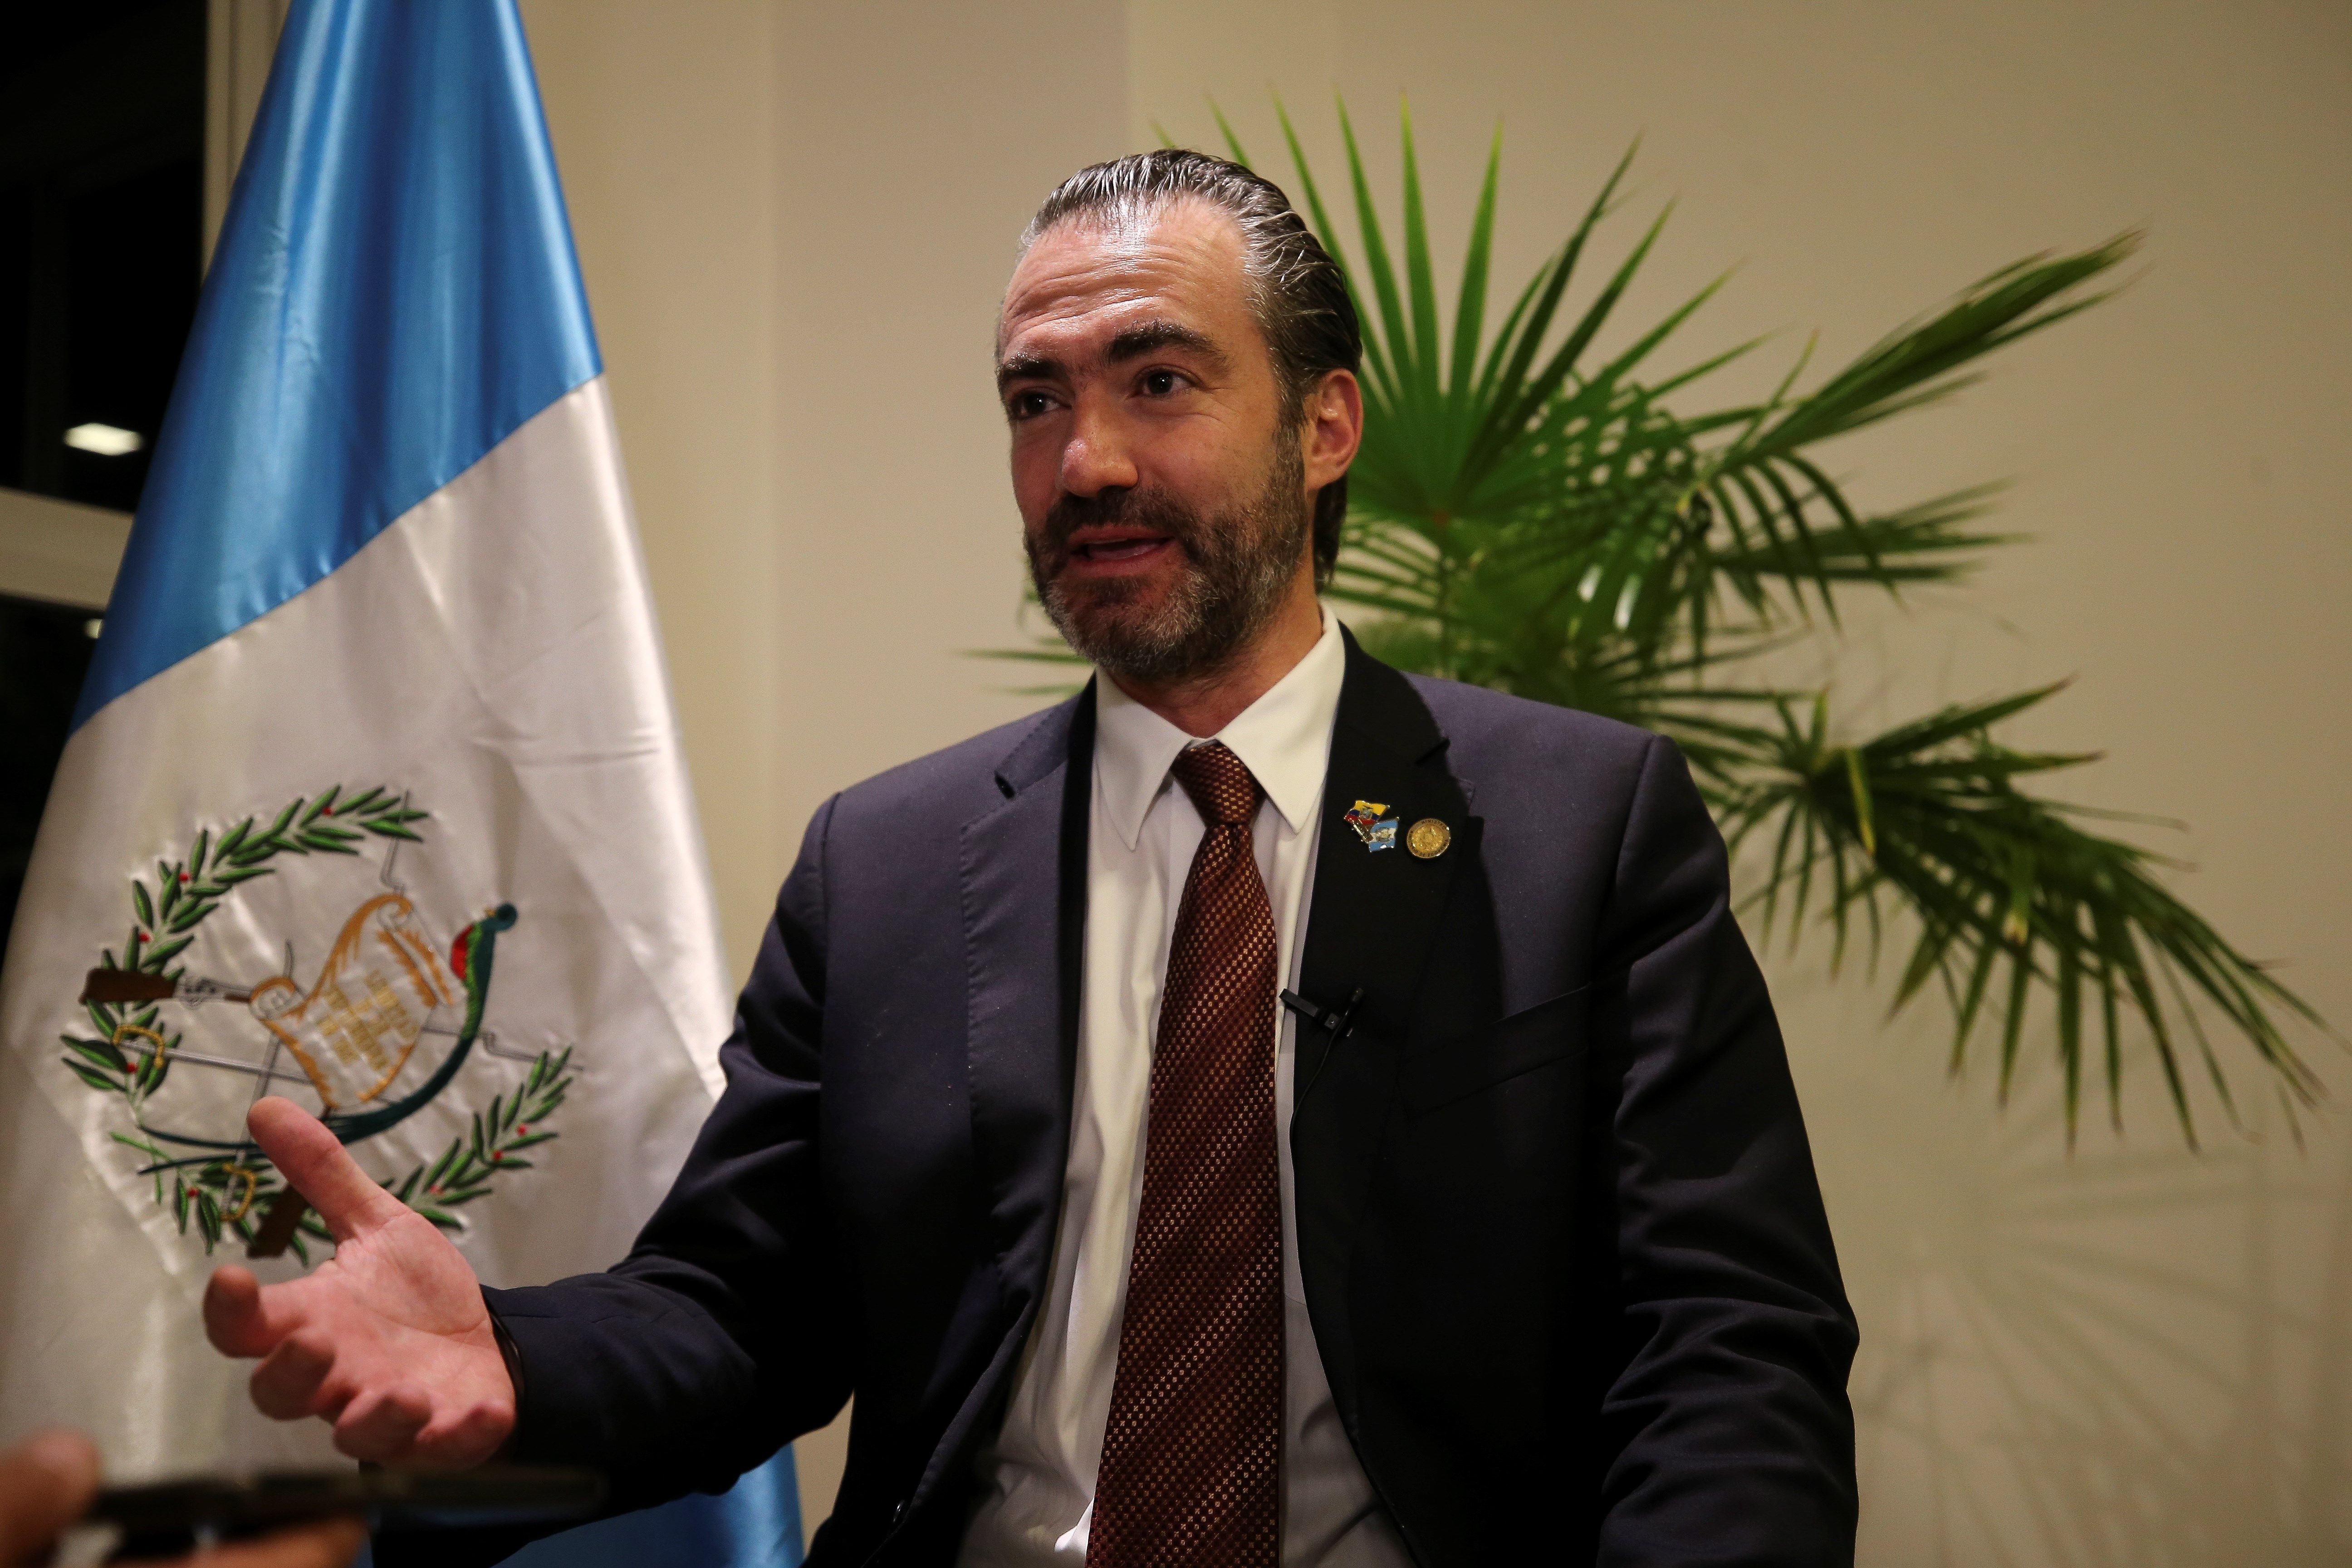 El ministro Acisclo Valladares Urruela acumula dos solicitudes de retiro de antejuicio en su contra. (Foto Prensa Libre: Hemeroteca)